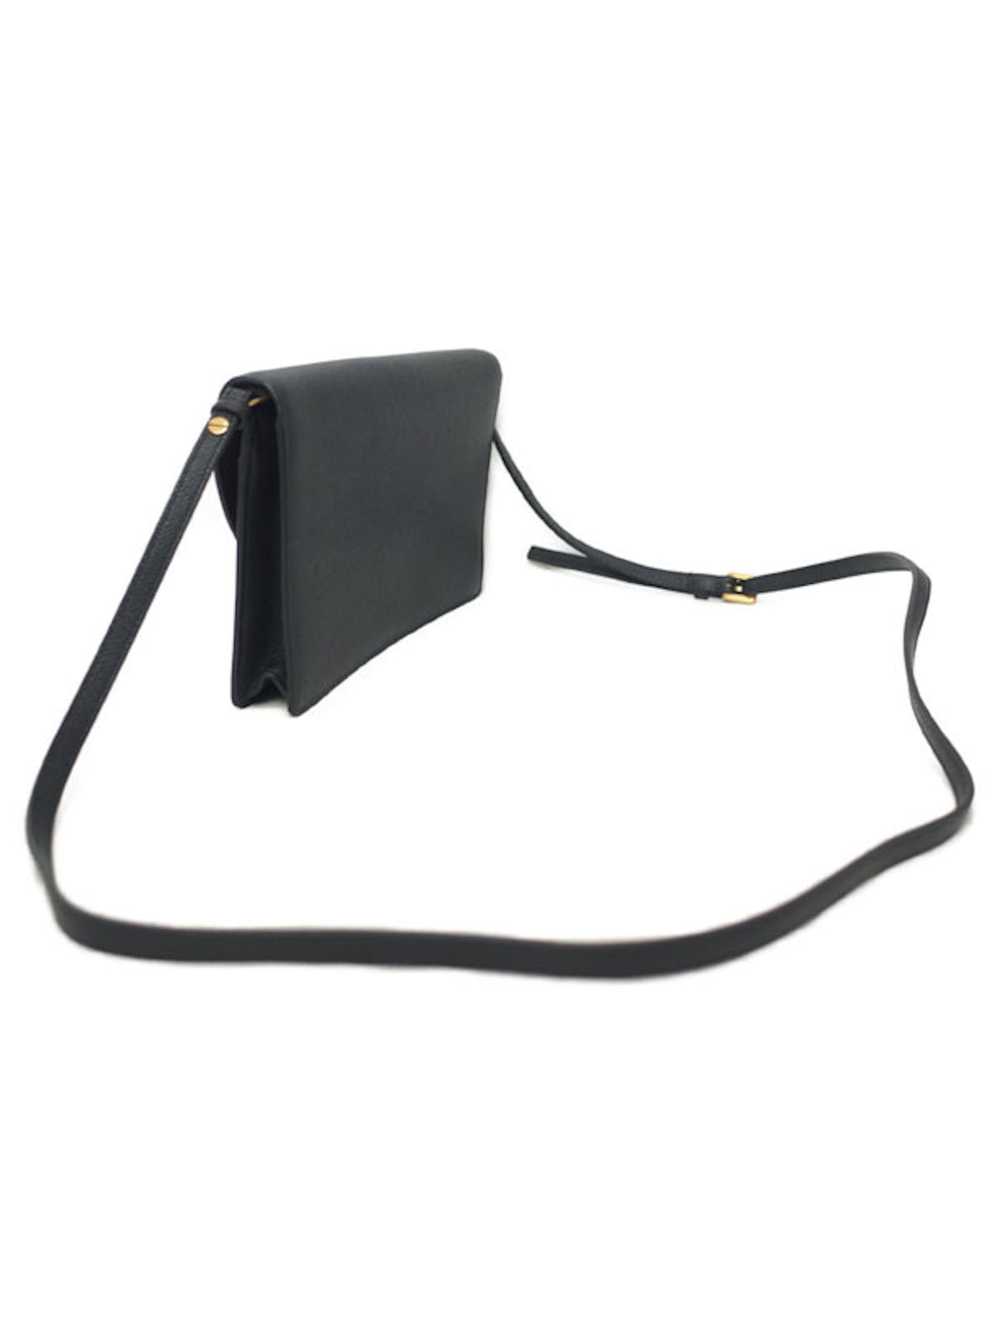 Dior Dior Saddle Bag Shoulder Leather Black - image 2